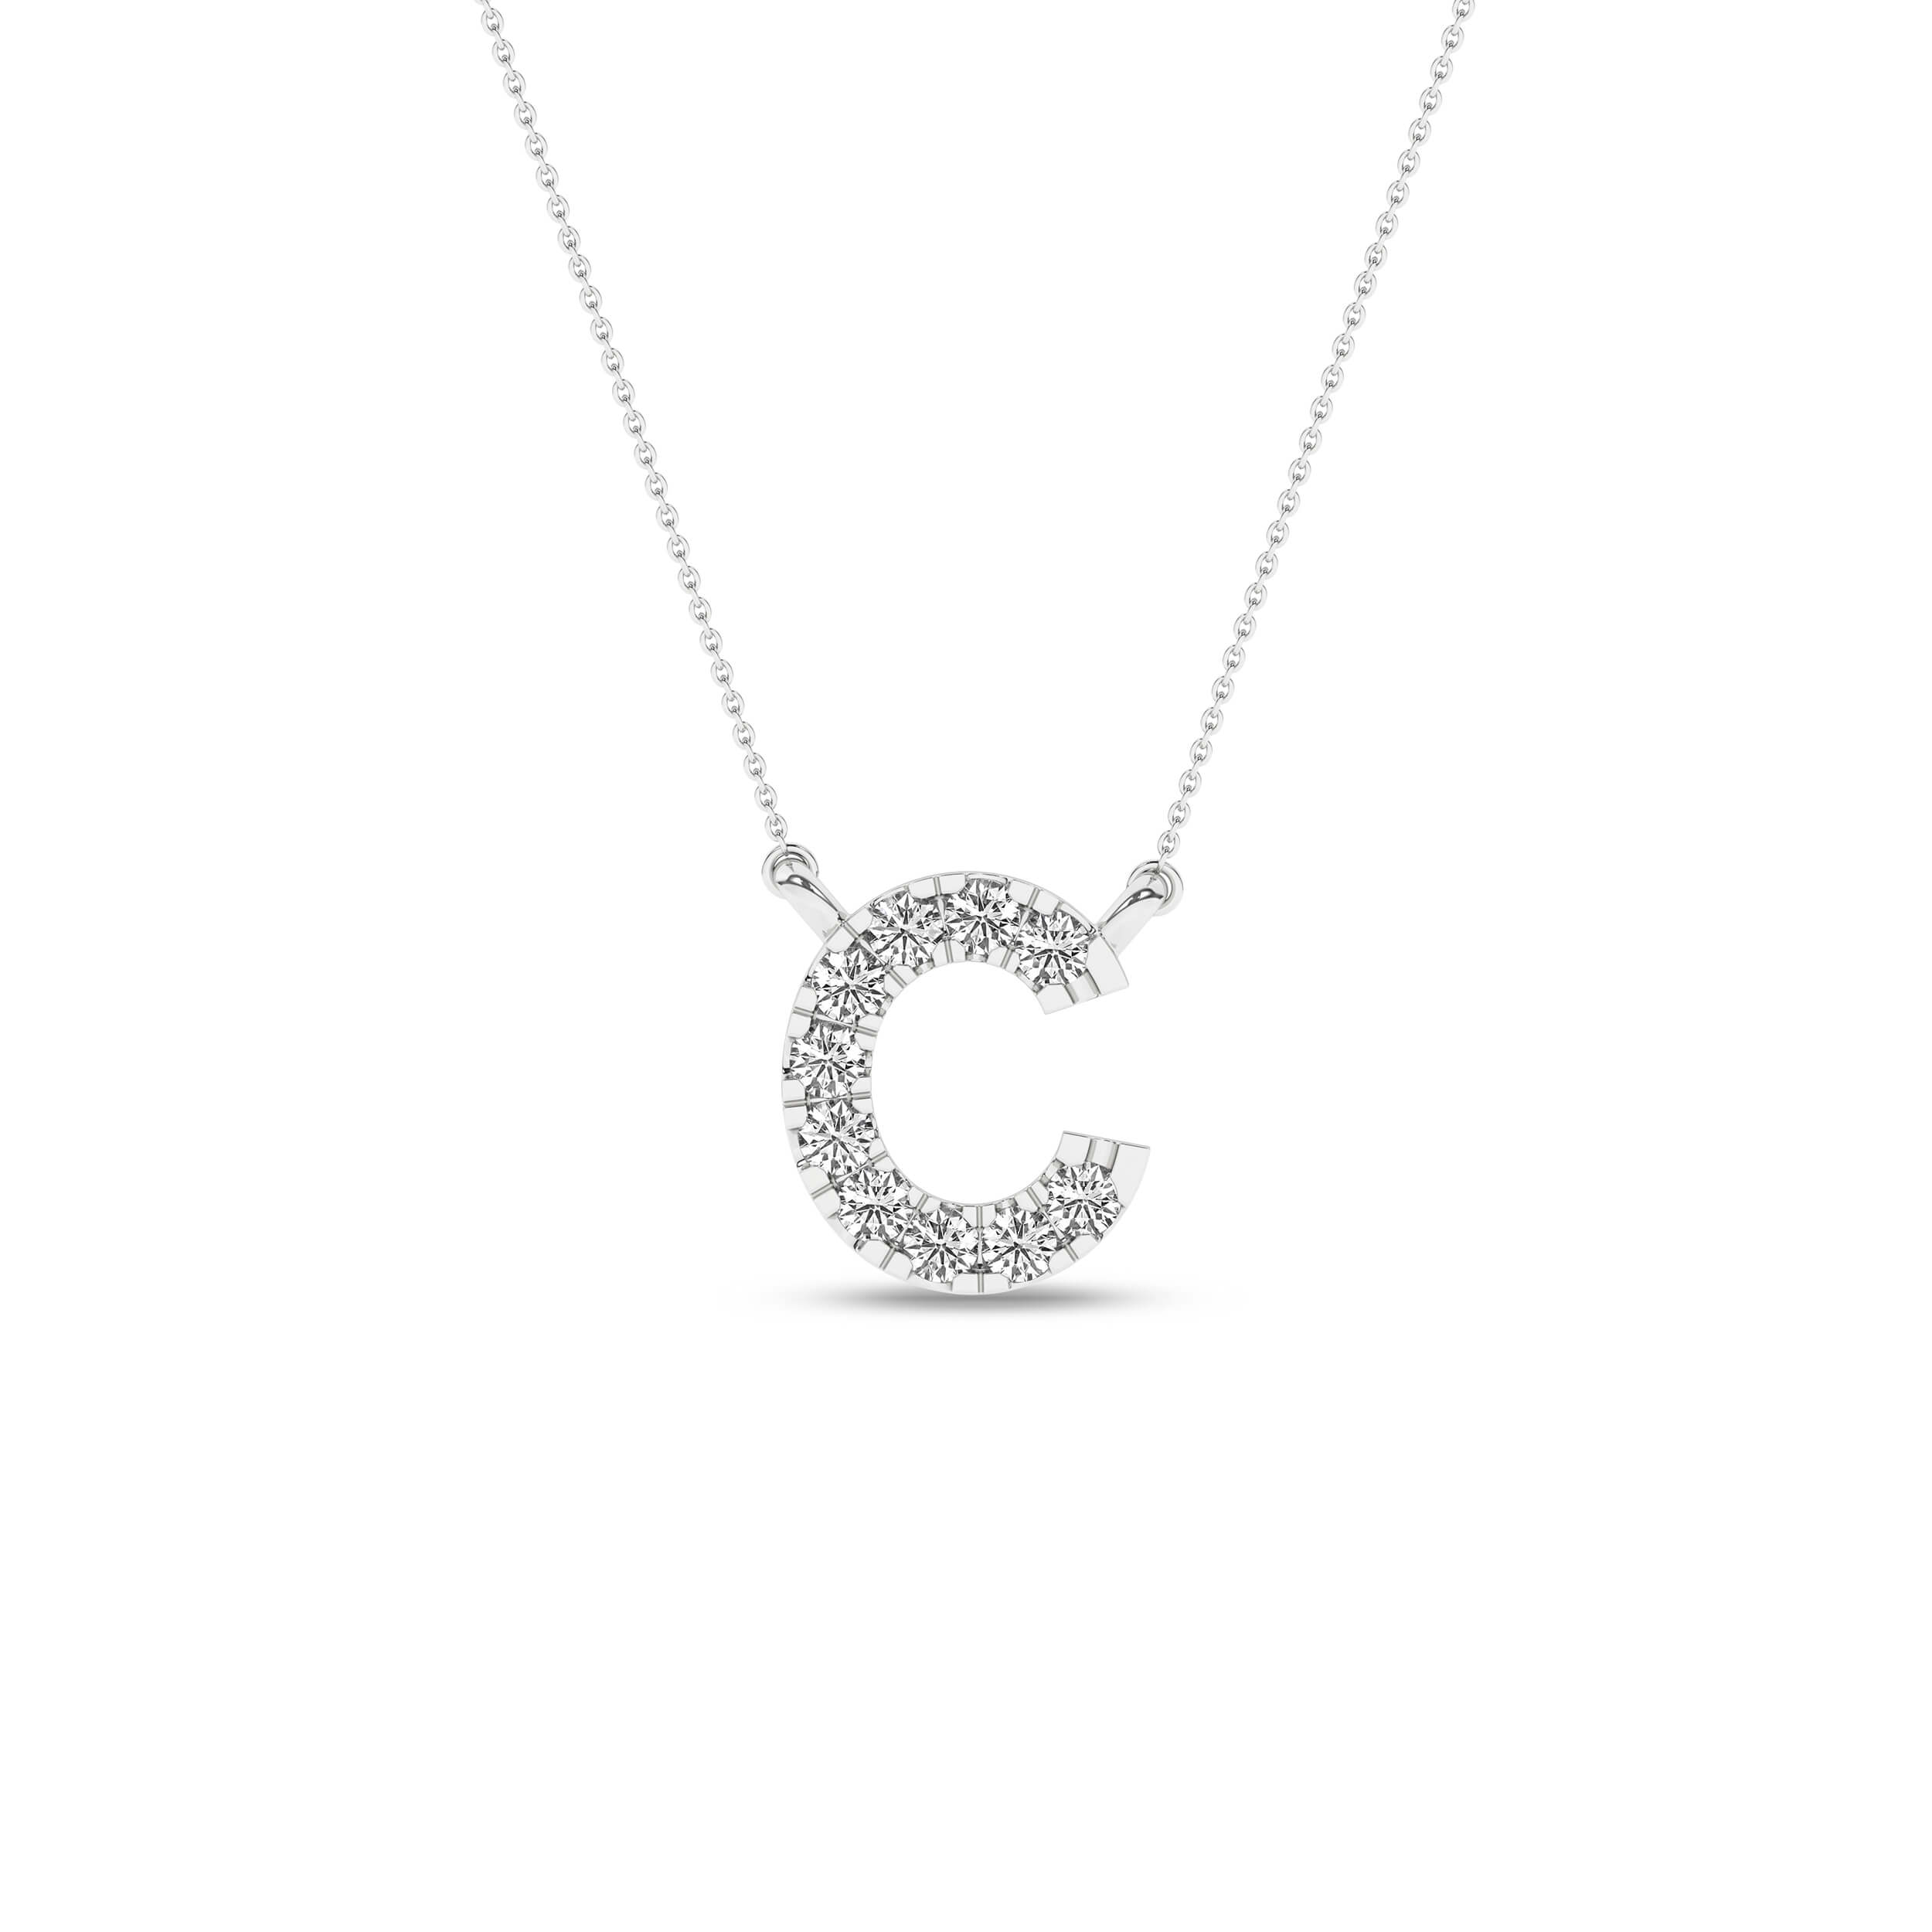 Colier litera "C" din Aur Alb 14K cu Diamante 0.08Ct, articol PF14770, previzualizare foto 1